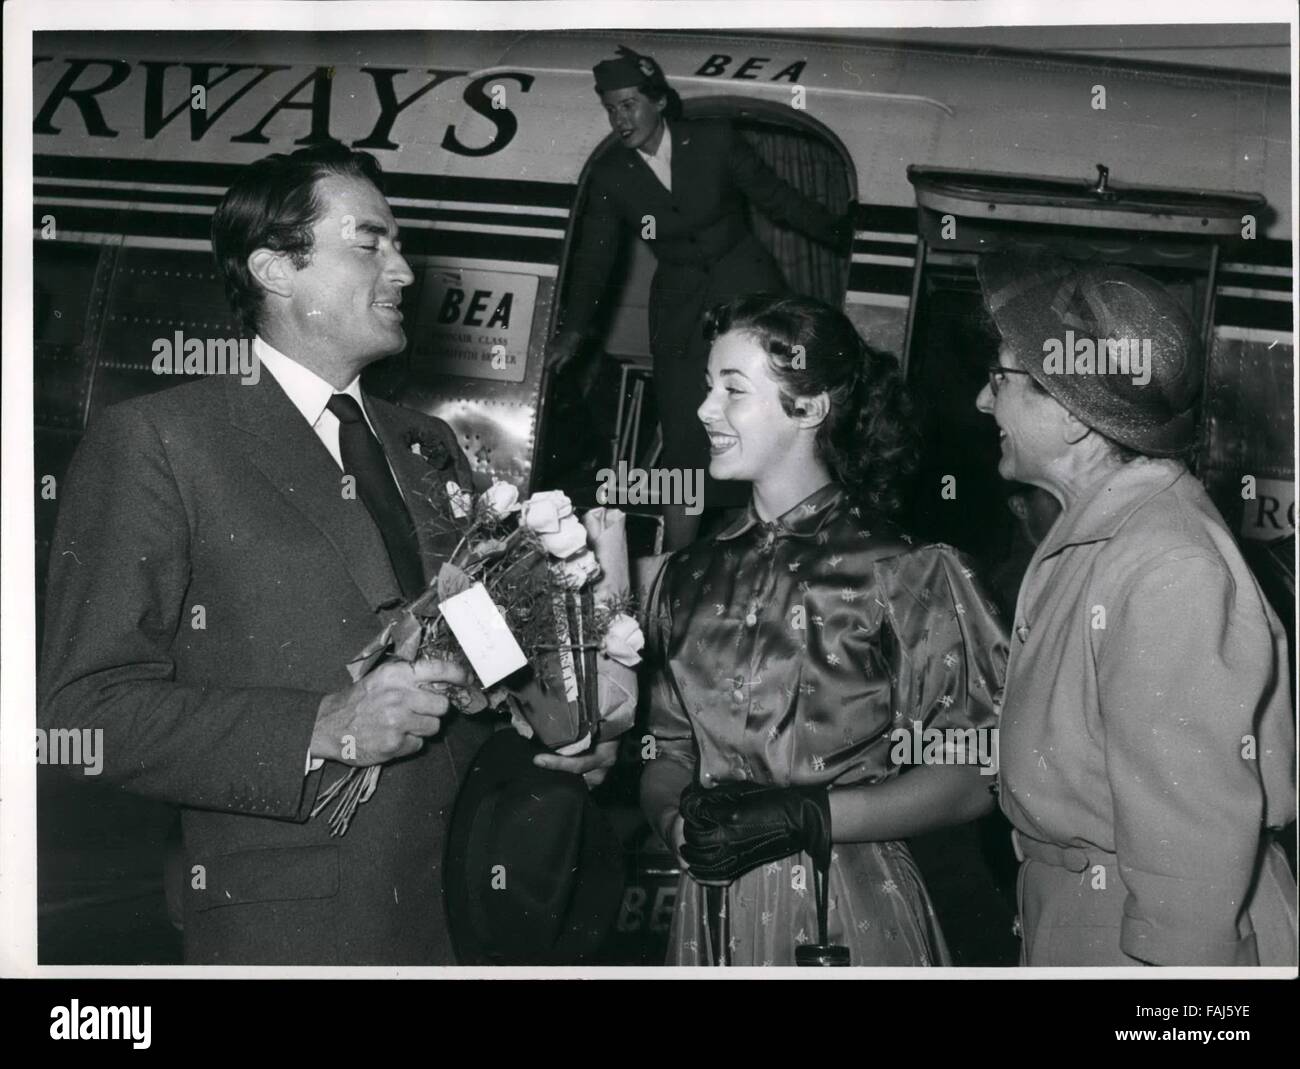 1962 - Transmission comme toujours Gregory Peck l'avion sur l'Aéroport de  Tempelhof Berli. L'acteur de cinéma américain a été reçu par la jeune  actrice américaine s Rita Gan avec un gros bouquet